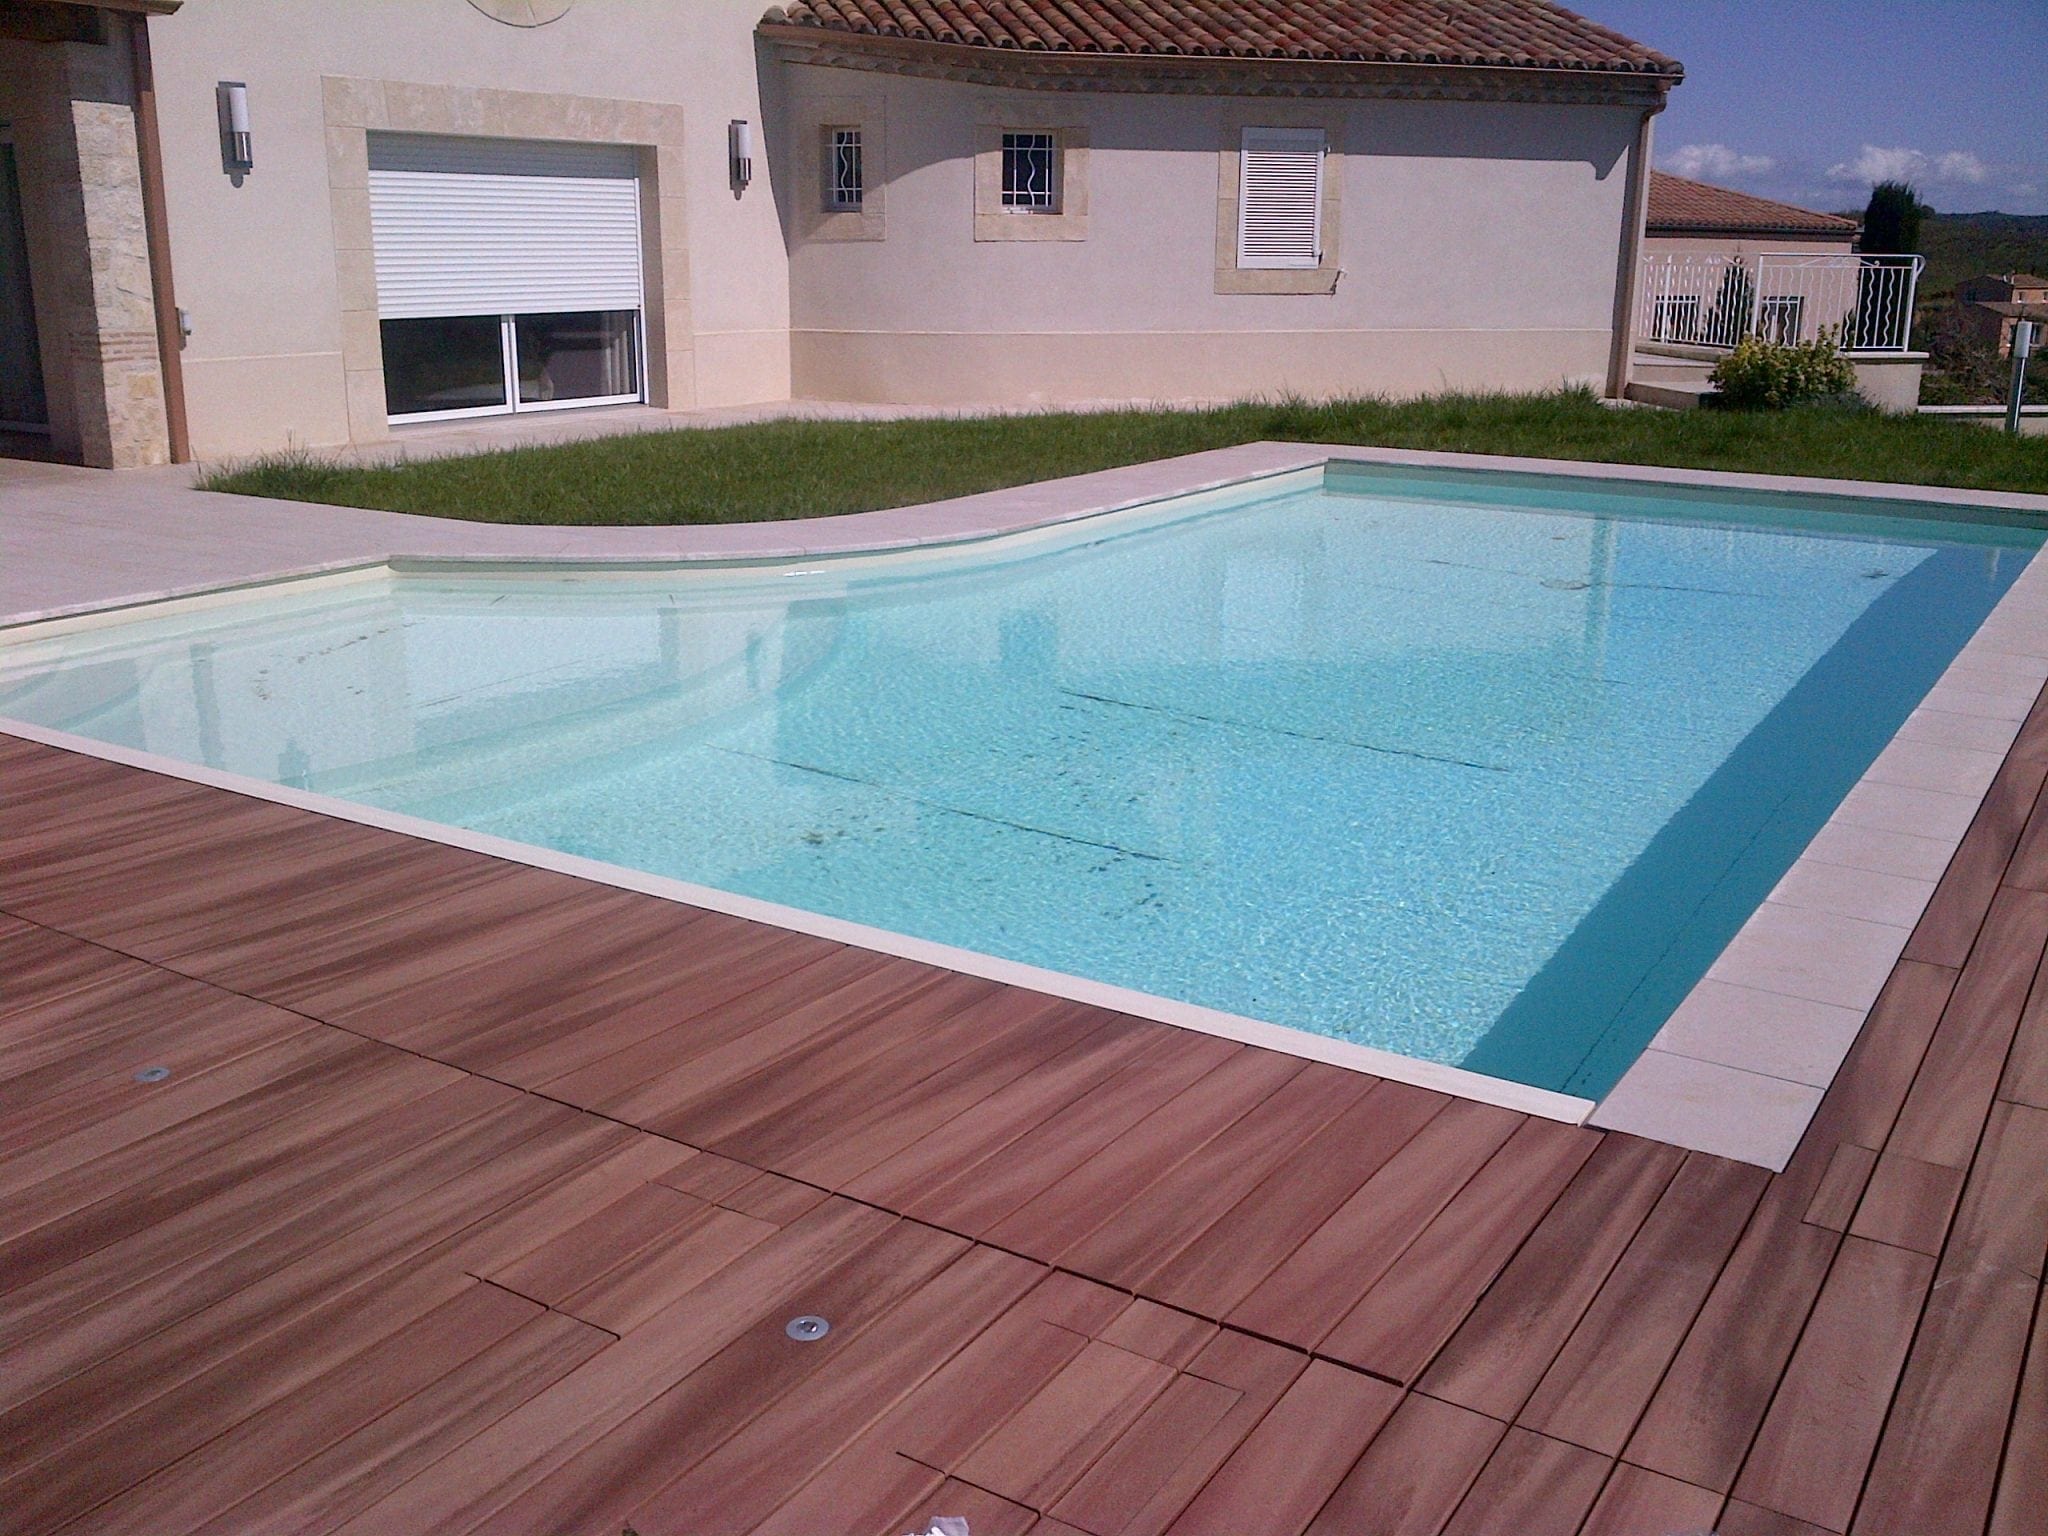 Rénovation de liner piscine par BTV-piscine, spécialiste de la construction et rénovation piscine sur Narbonne et dans tout le Languedoc Roussillon